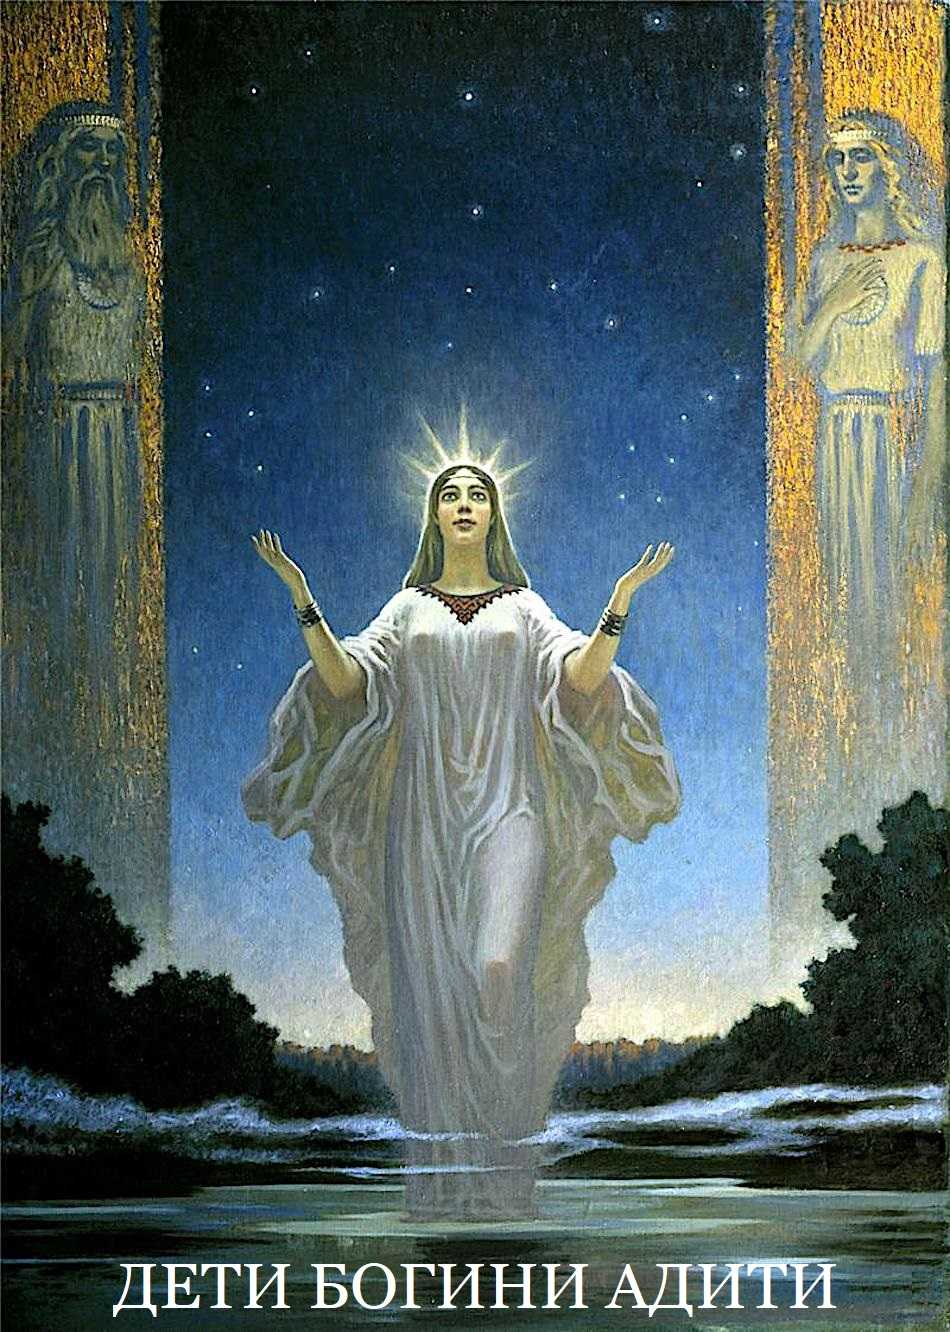 Богиня лада — славянская богиня любви и красоты